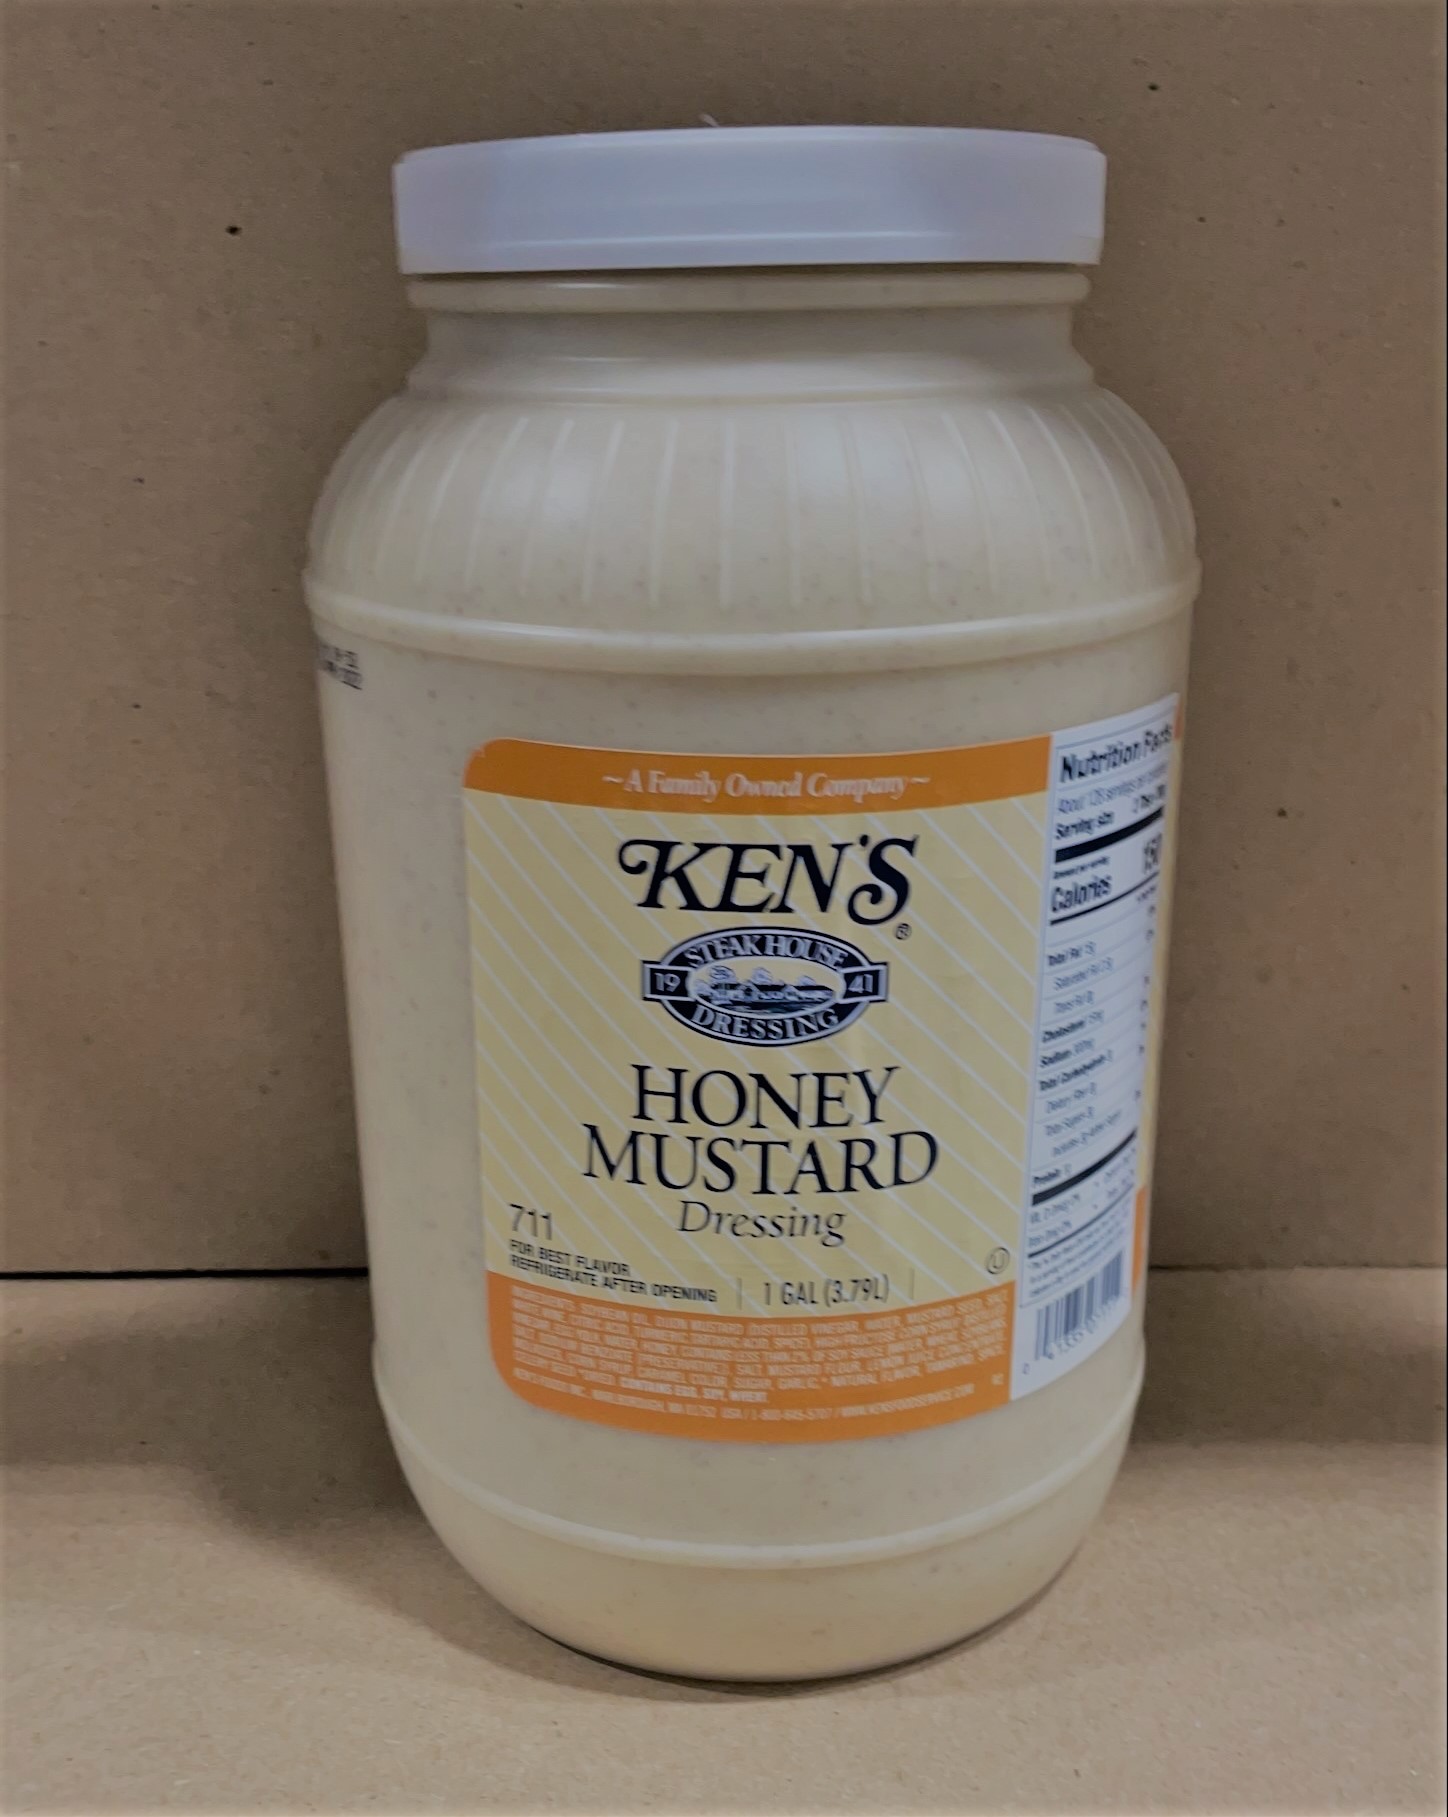 Ken's - Honey Mustard Dressing 4/1gl